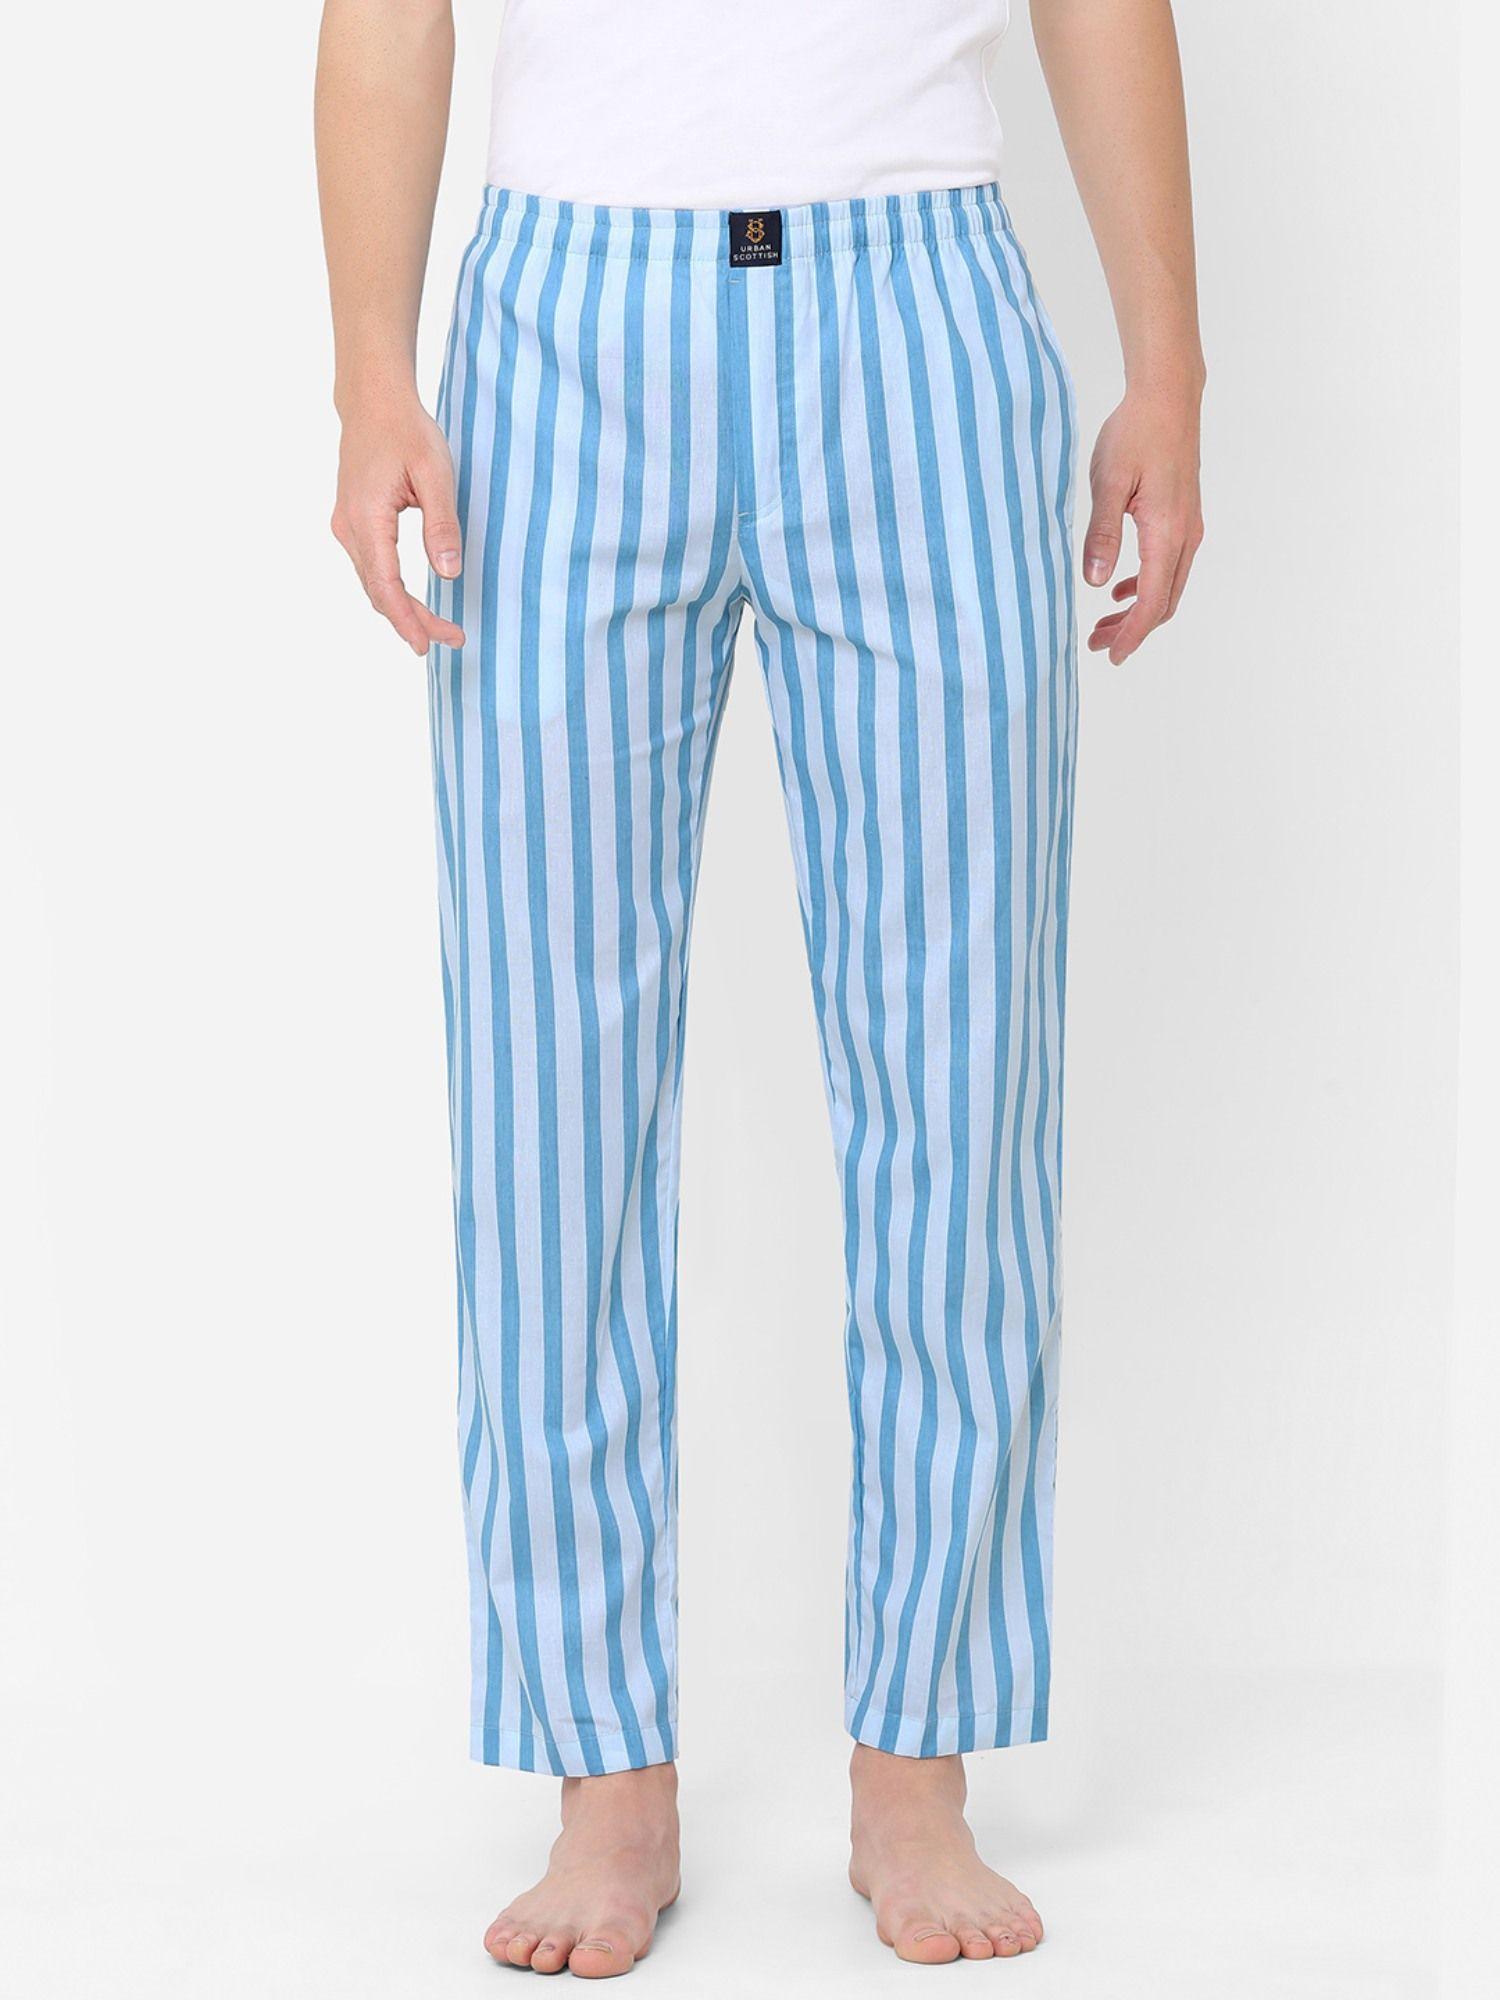 mens stripes printed cotton pyjamas blue